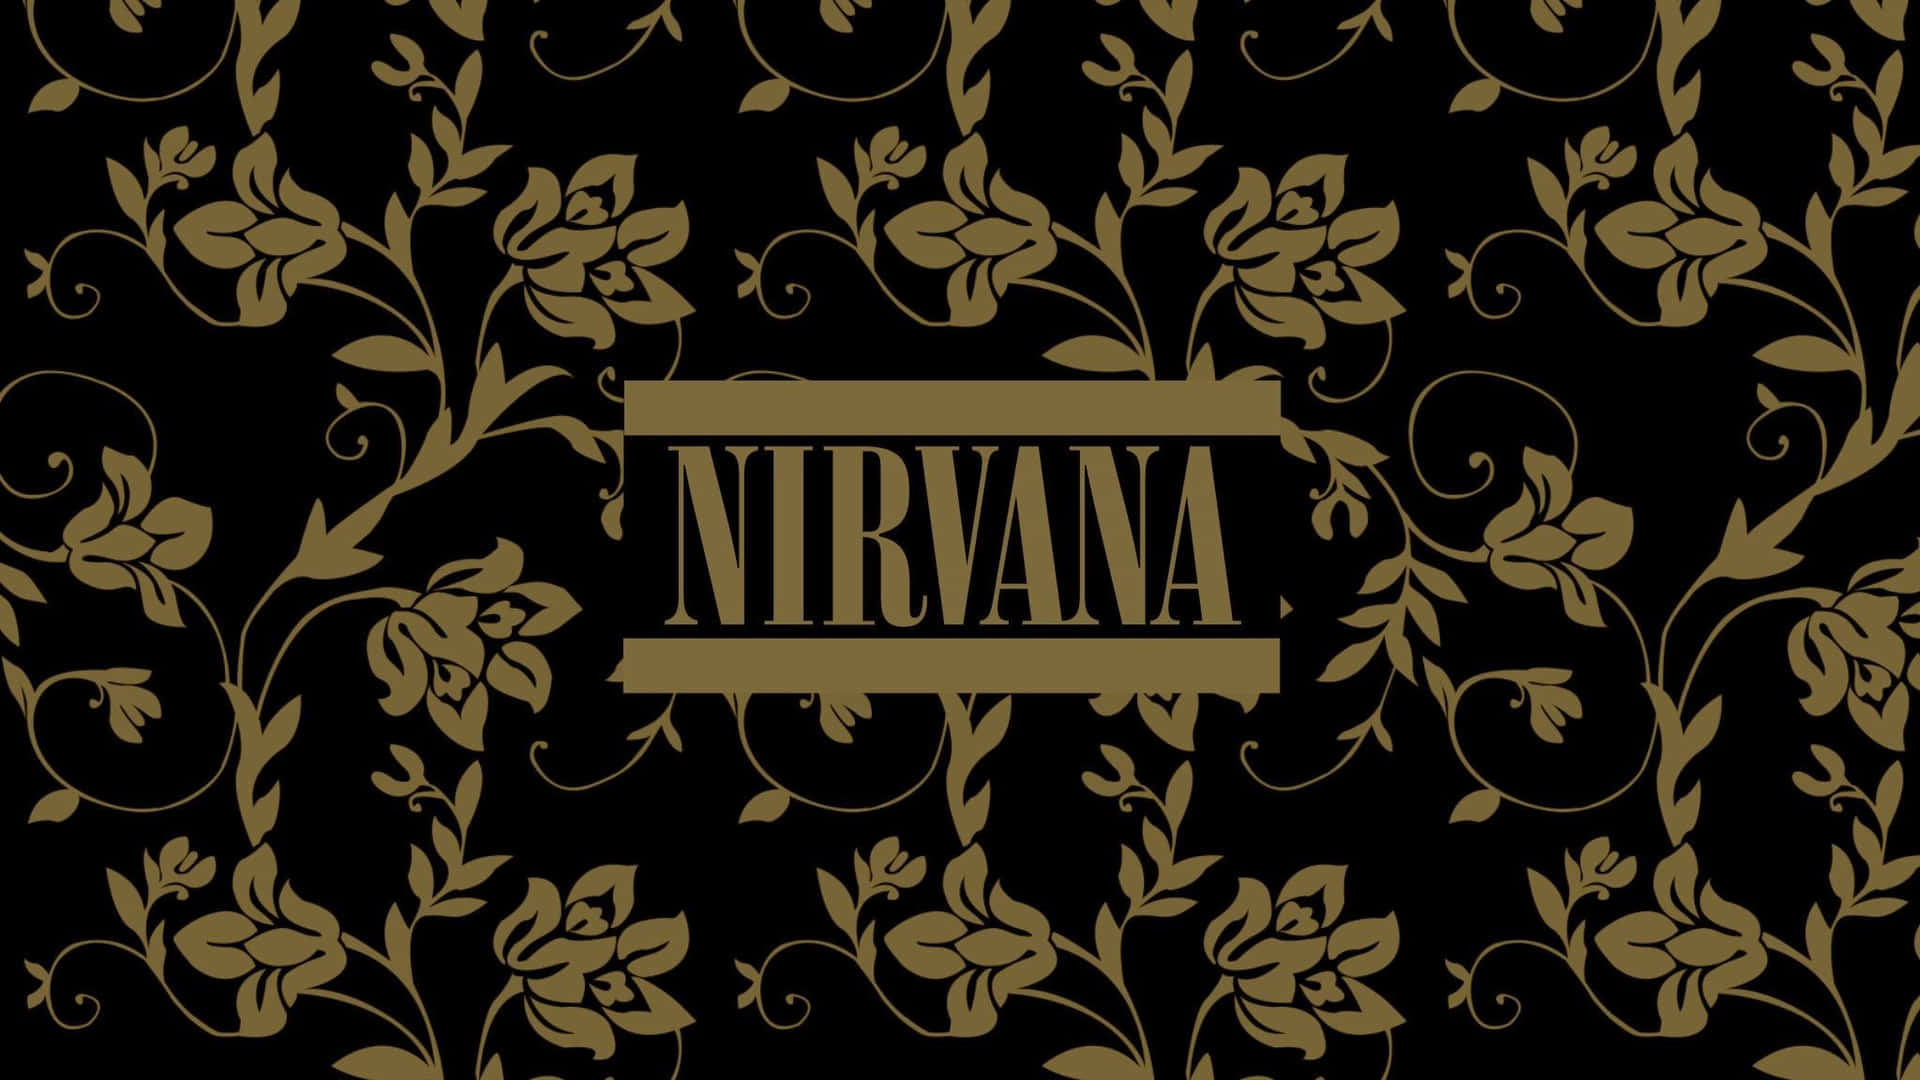 The legendary Nirvana band logo grunge background